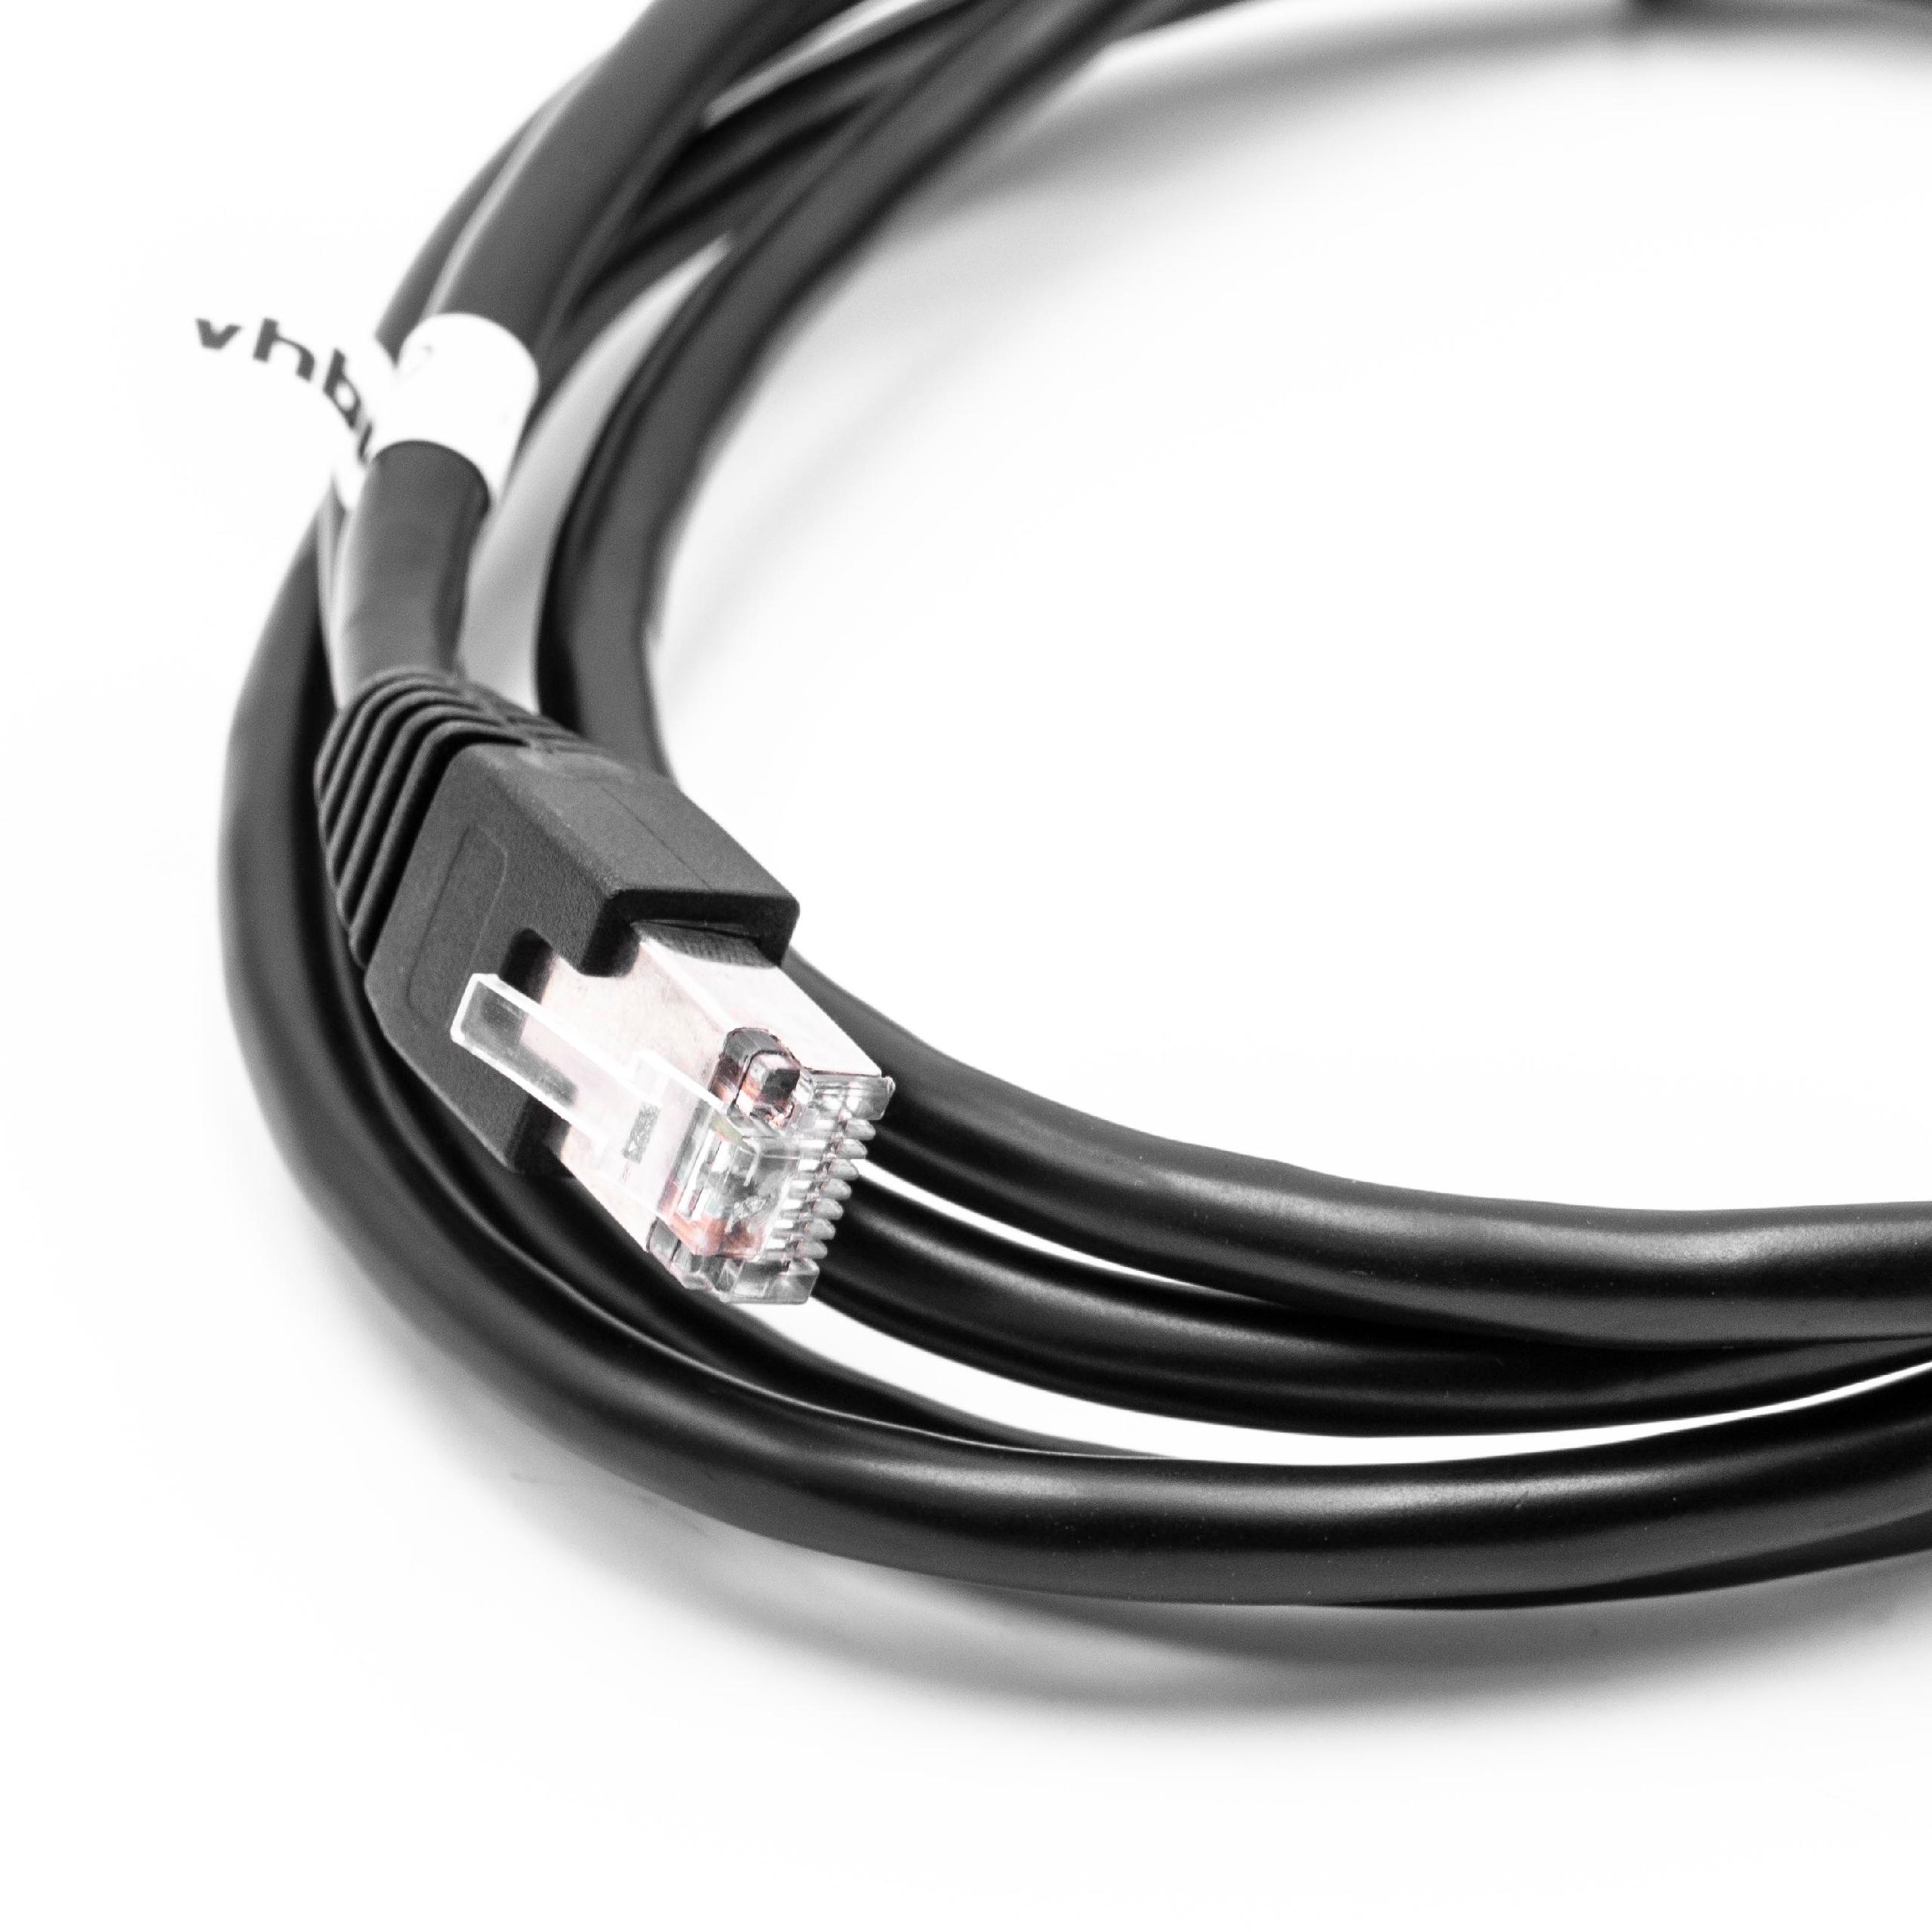 Cable de extensión Cat6, RJ45 (m) a RJ45 (h) - Cable Ethernet LAN con conector RJ45 incorporado, 2 m